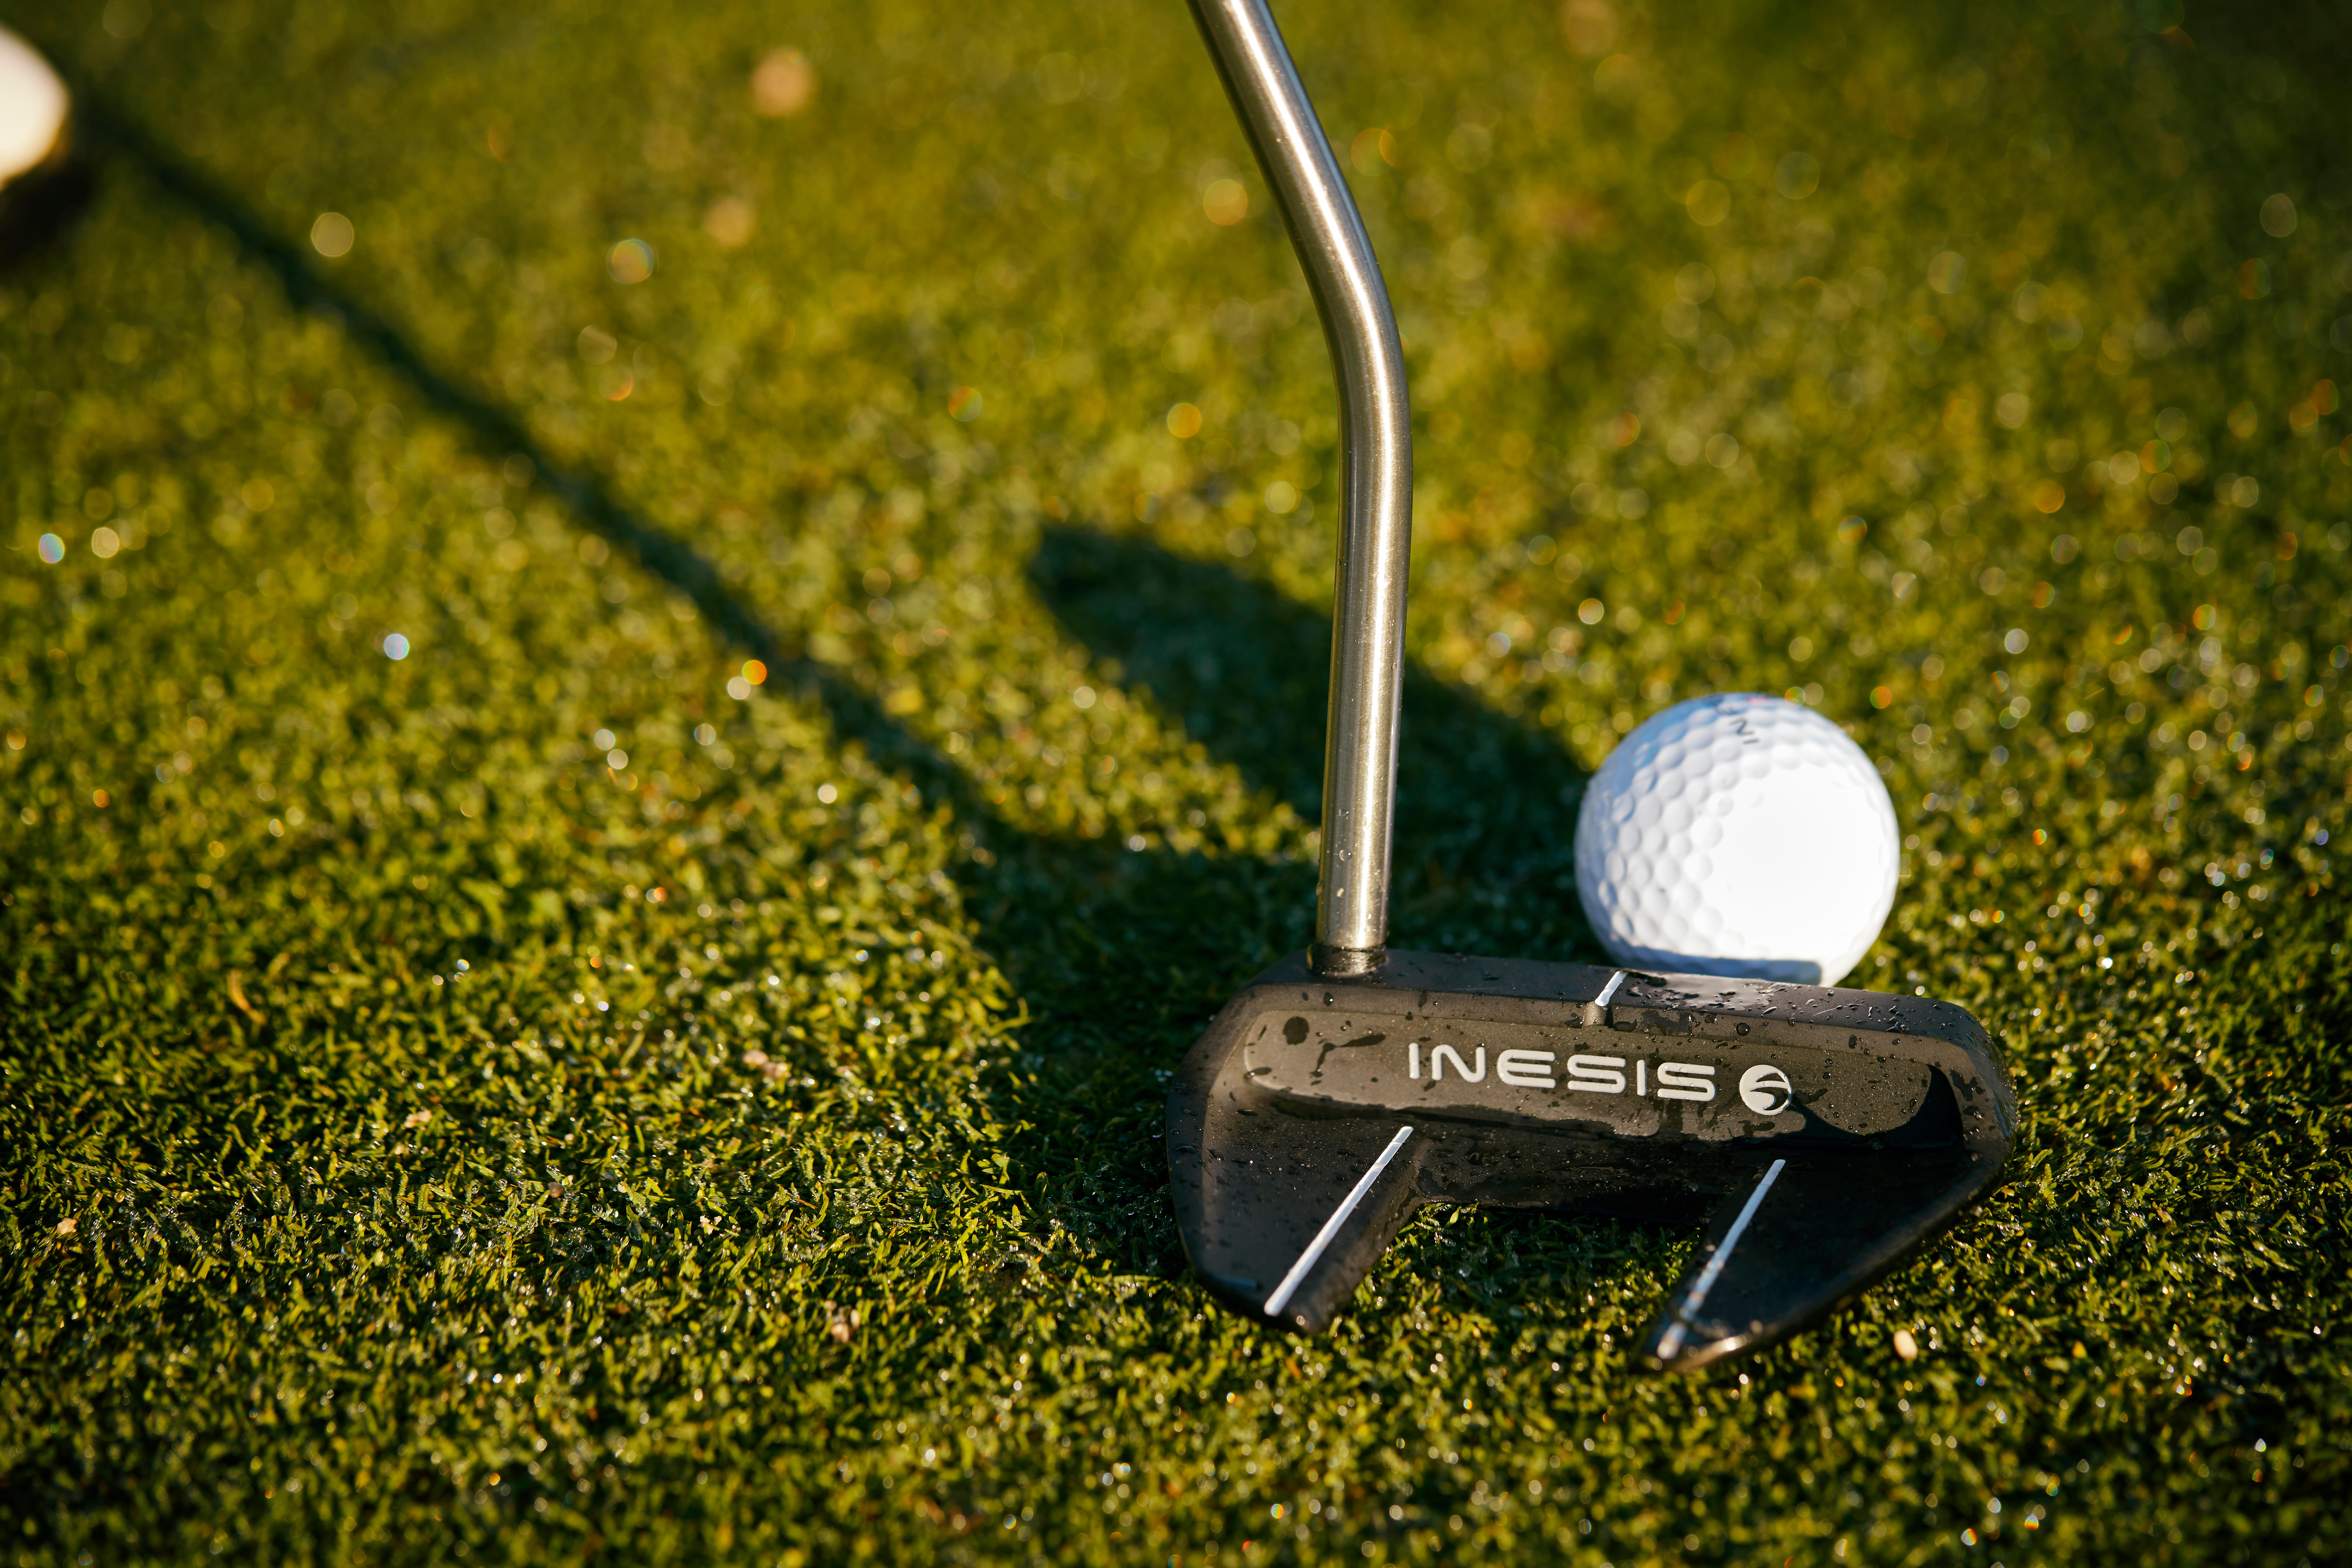 Bis zu 45% aller gespielten Golfschläge auf einer Runde werden mit dem Putter gemacht